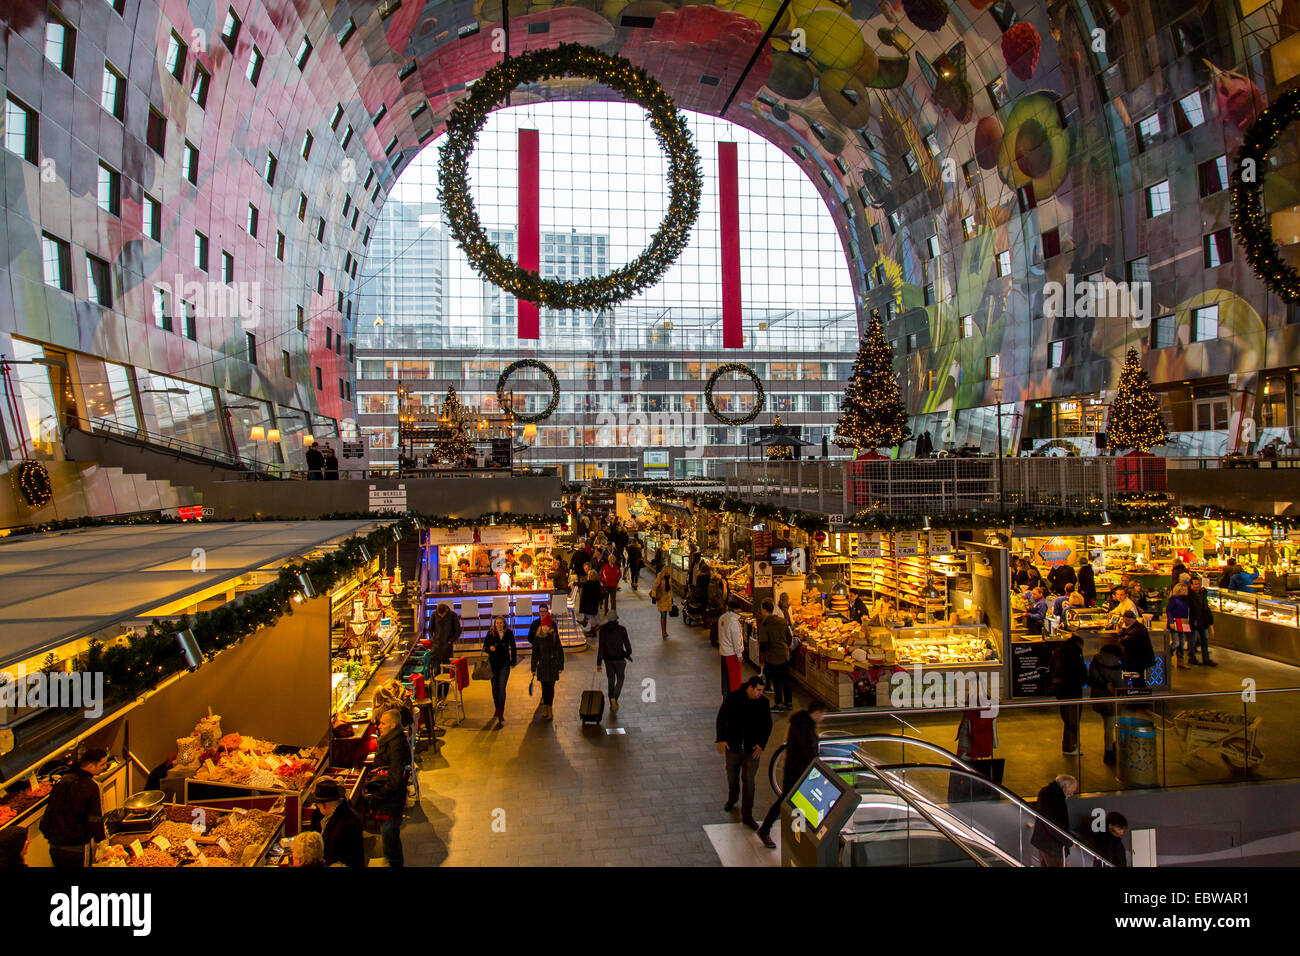 Die neue Markthalle in Rotterdam, Restaurants, Lebensmittelgeschäfte, Markt, riesige Wandmalereien, Stockfoto